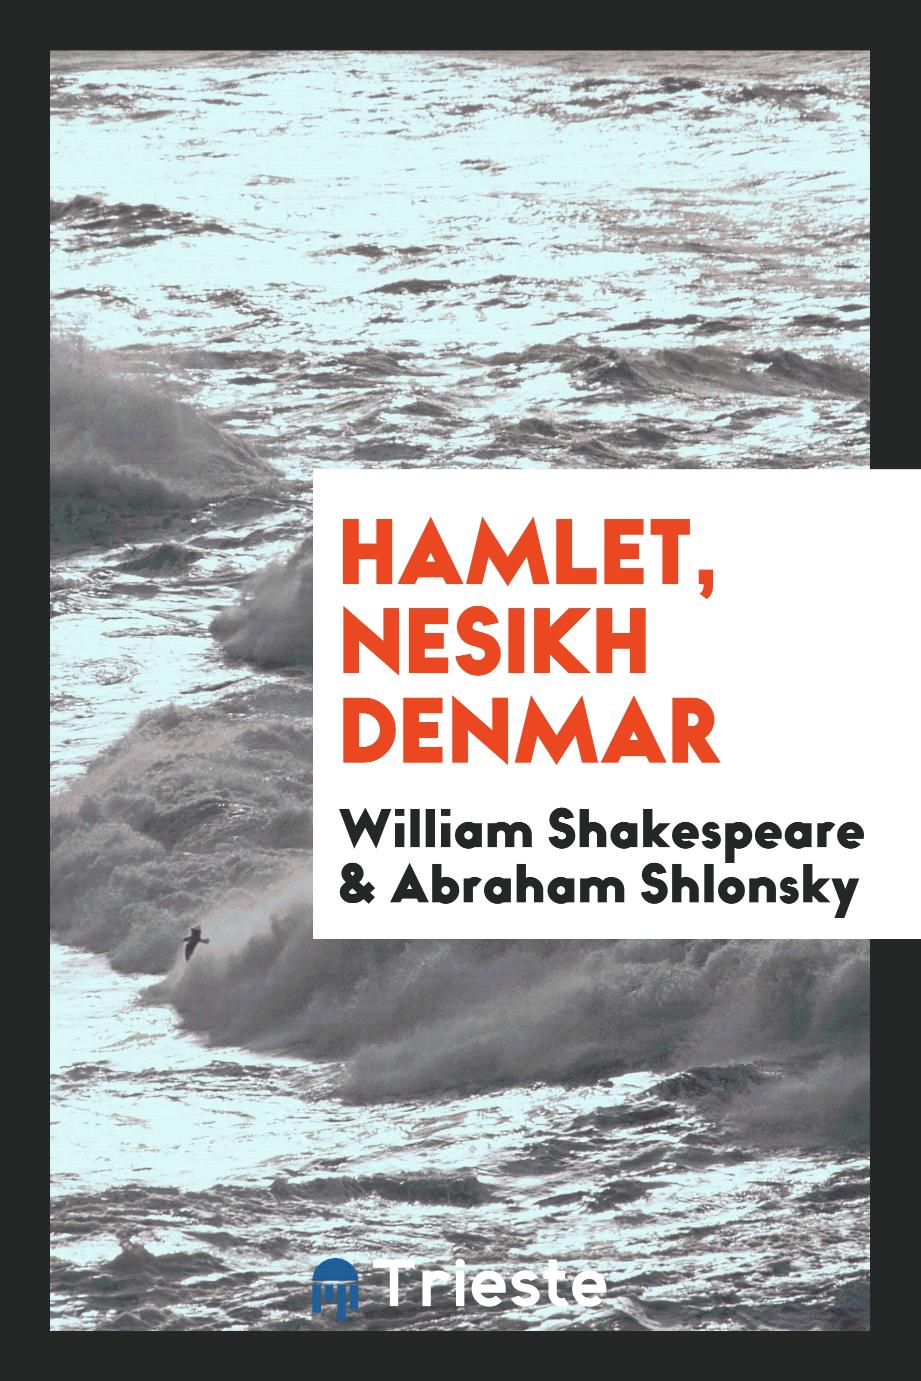 Hamlet, nesikh Denmar